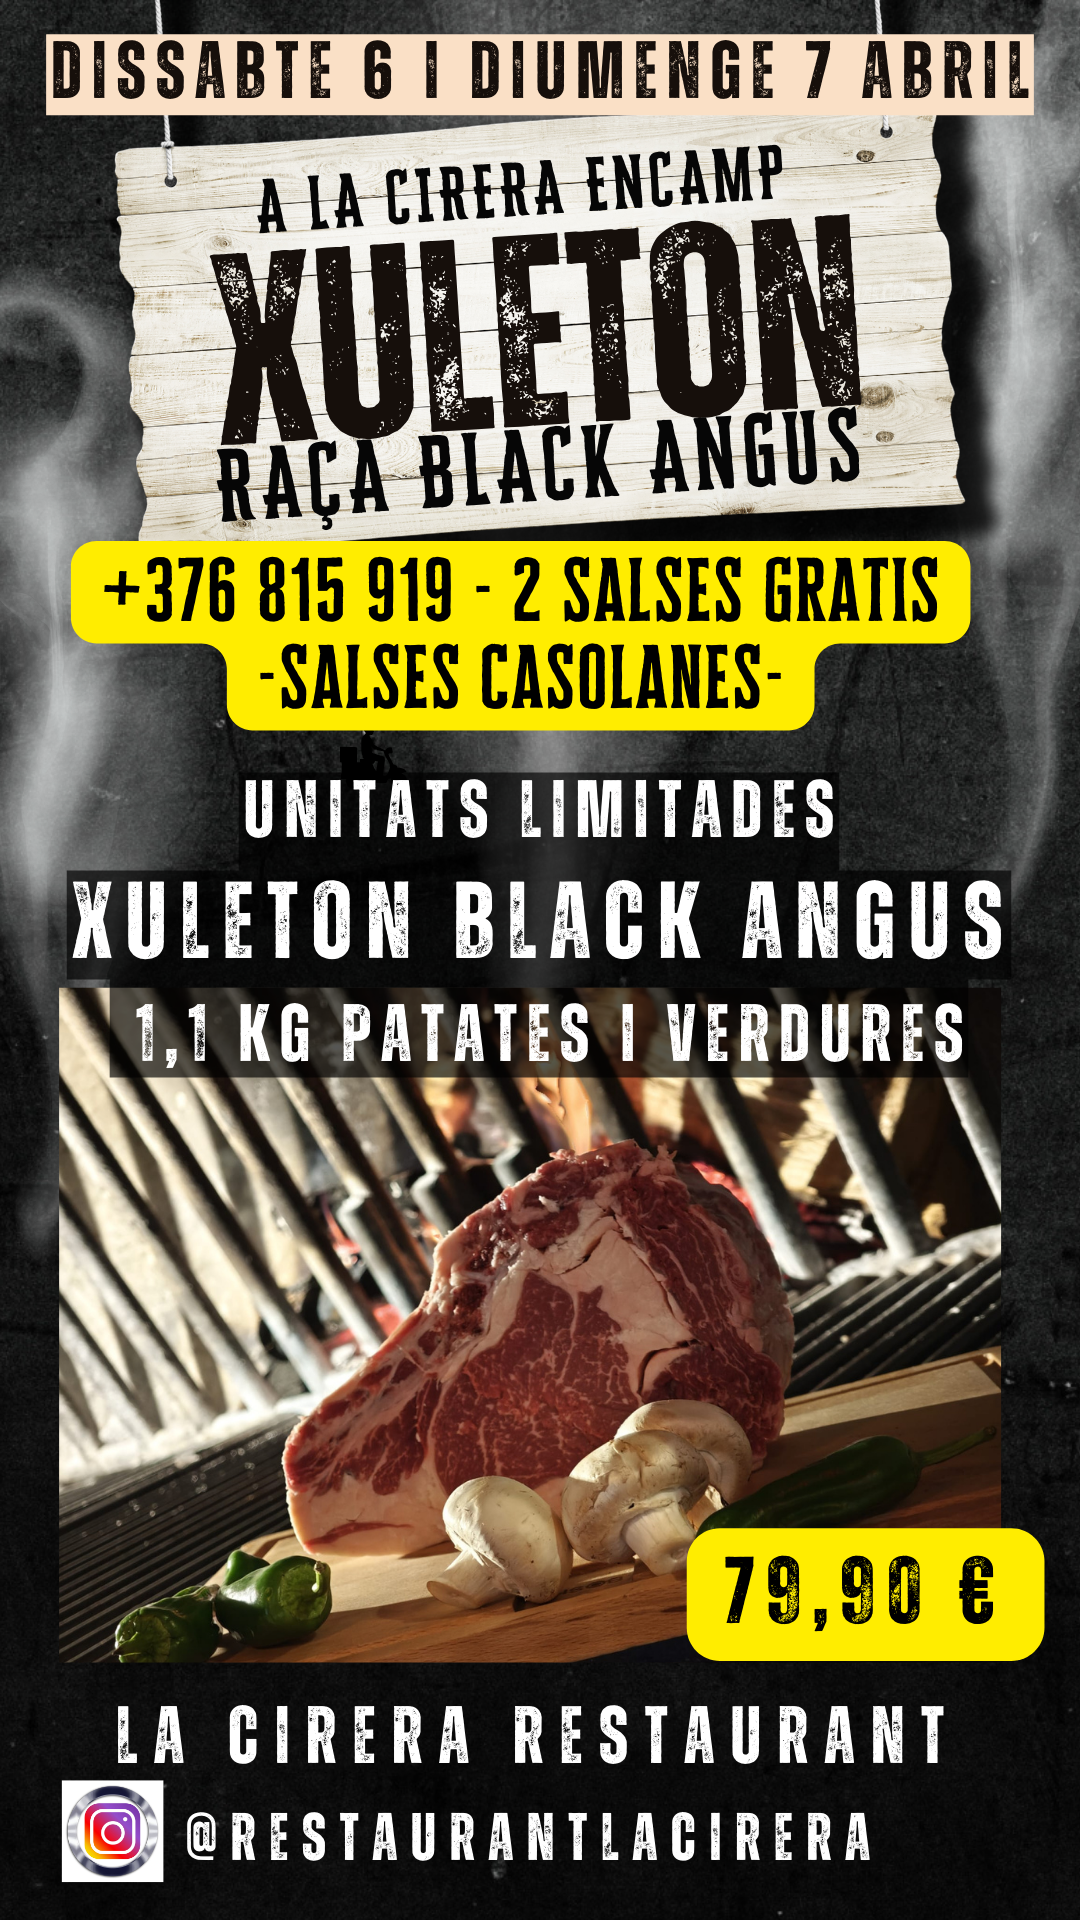 Este fin de semana, en La Cirera, se presenta una oportunidad imperdible para los amantes de la buena carne. El sábado 6 y domingo 7 de abril, se podrá disfrutar de una experiencia gastronómica singular: un chuletón de 1,1 kilogramos de la prestigiosa raza bovina Black Angus. 